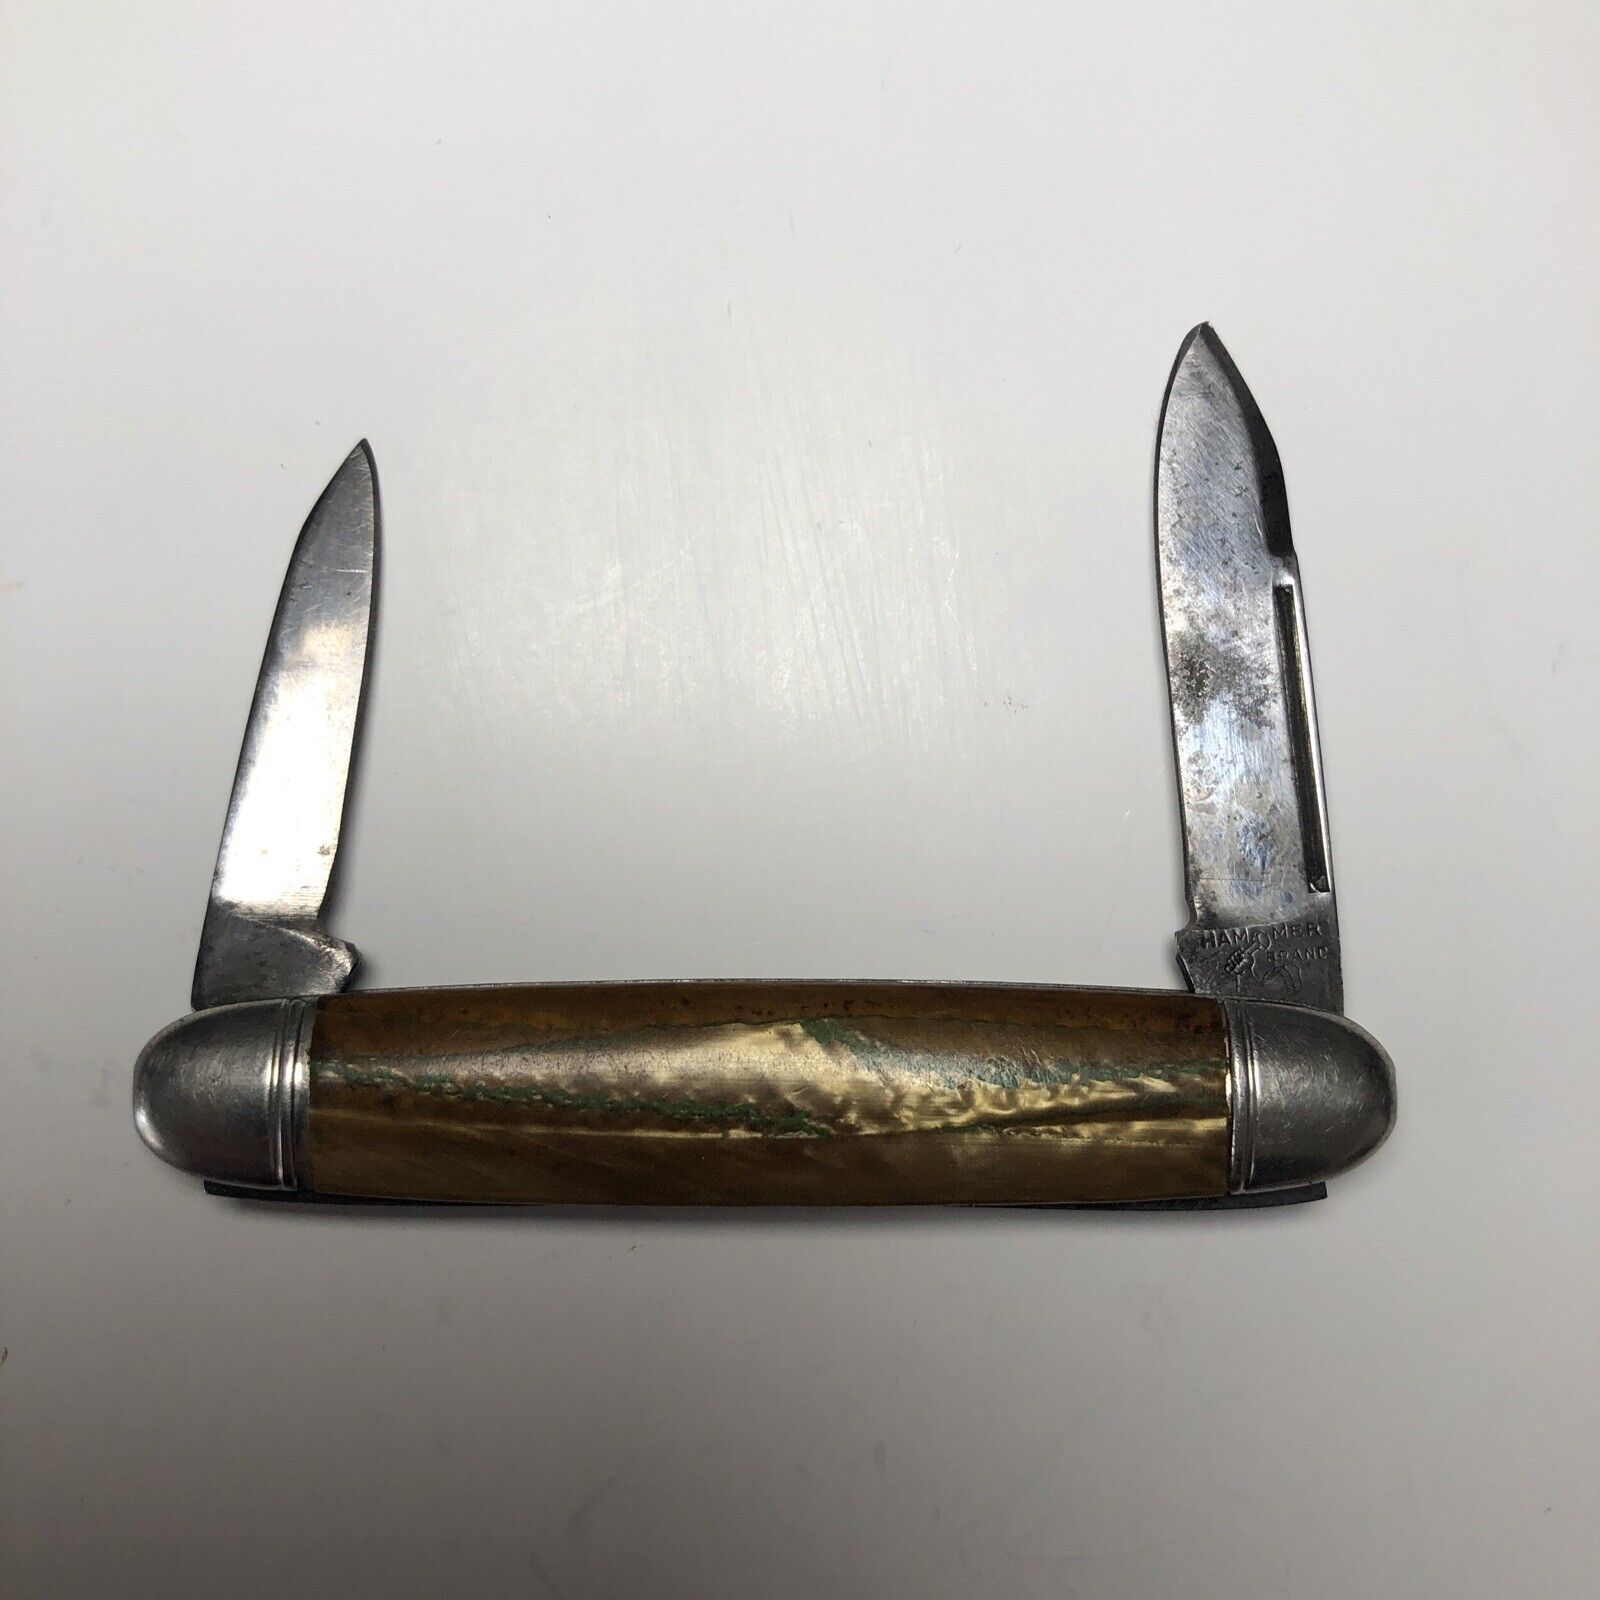 Vintage Hammer Brand Pocket Knife 2-Blade Drop Point 1-5/8” Unique Finish - 508